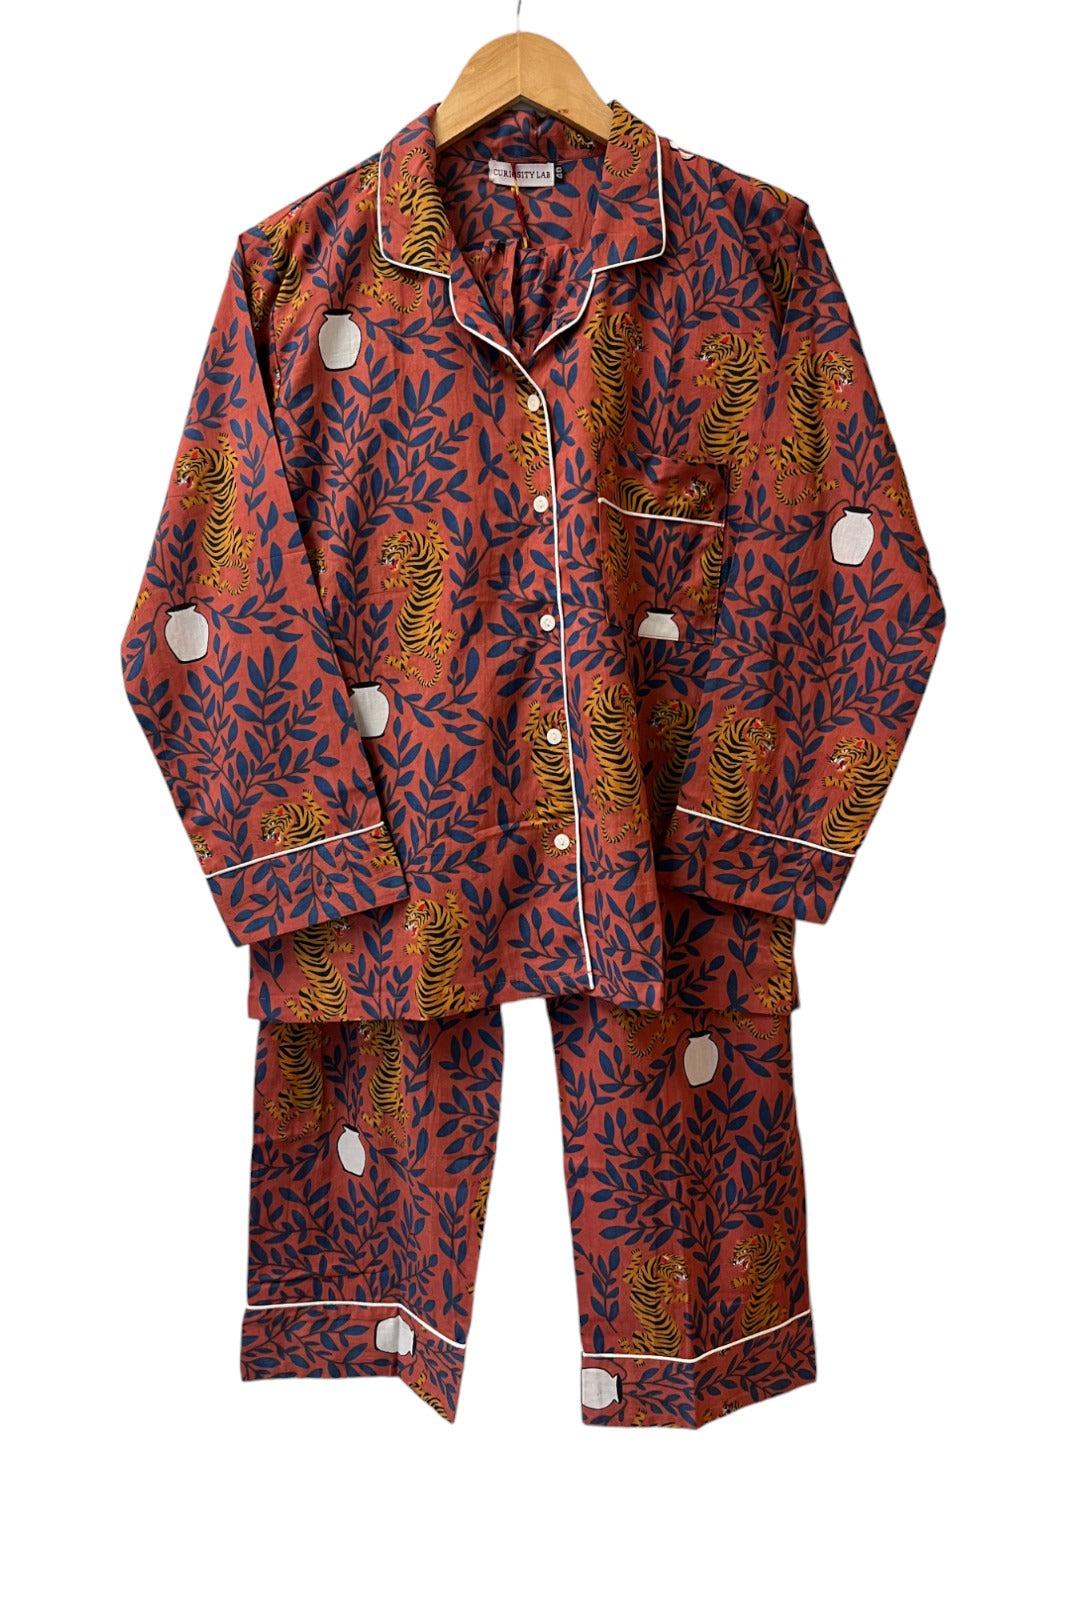 pyjama set mandu coton indien